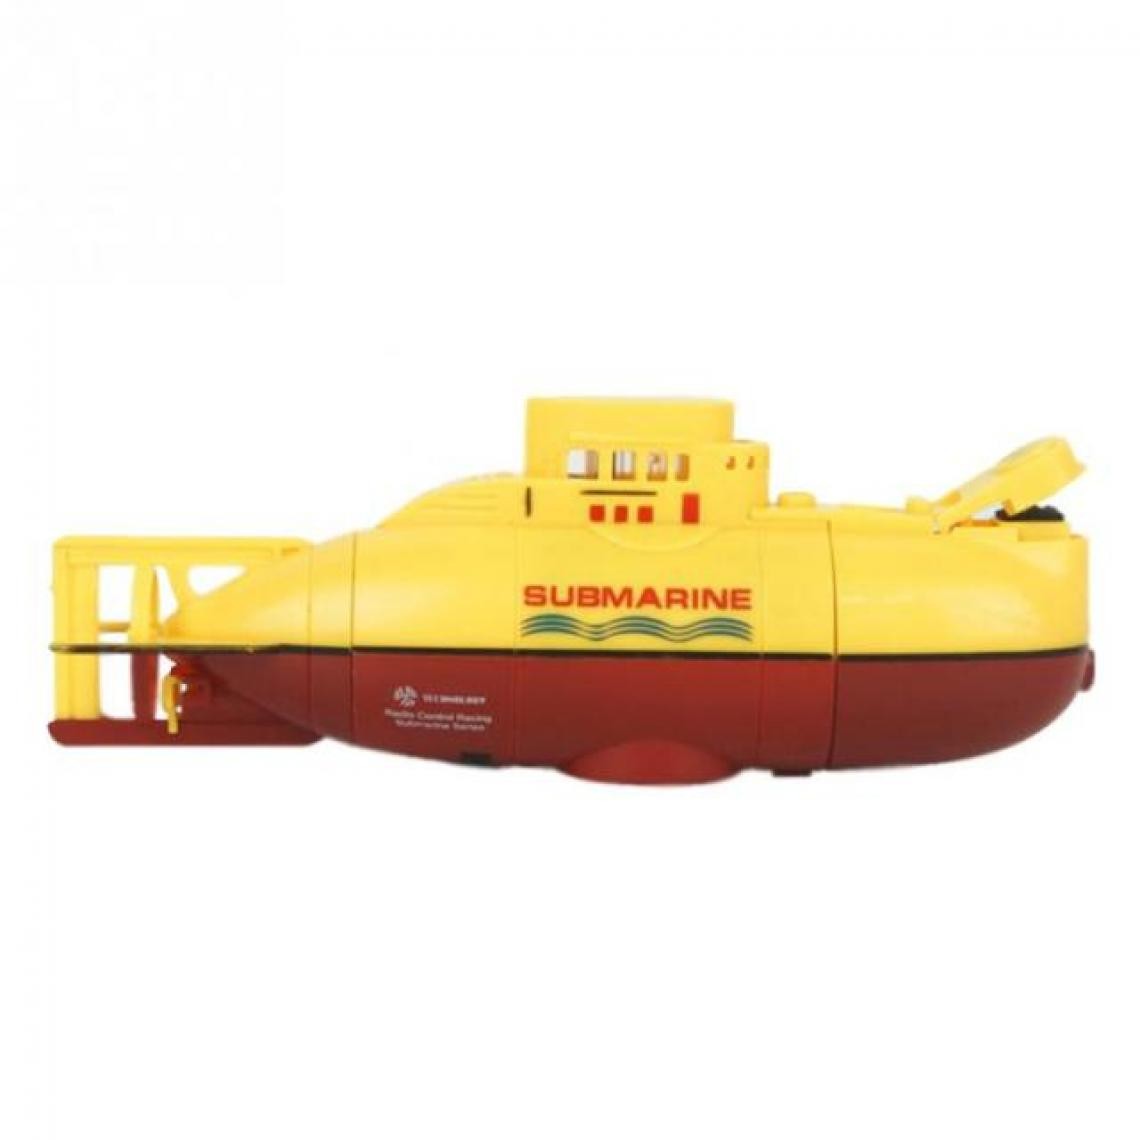 Universal - 2019 Nouveau Mini RC Submarine 3.7V Grand modèle RC Submarine Jouet extérieur prêt à fonctionner Modèle de bateau d'accélération Haute puissance | RC Submarine (jaune) - Bateaux RC